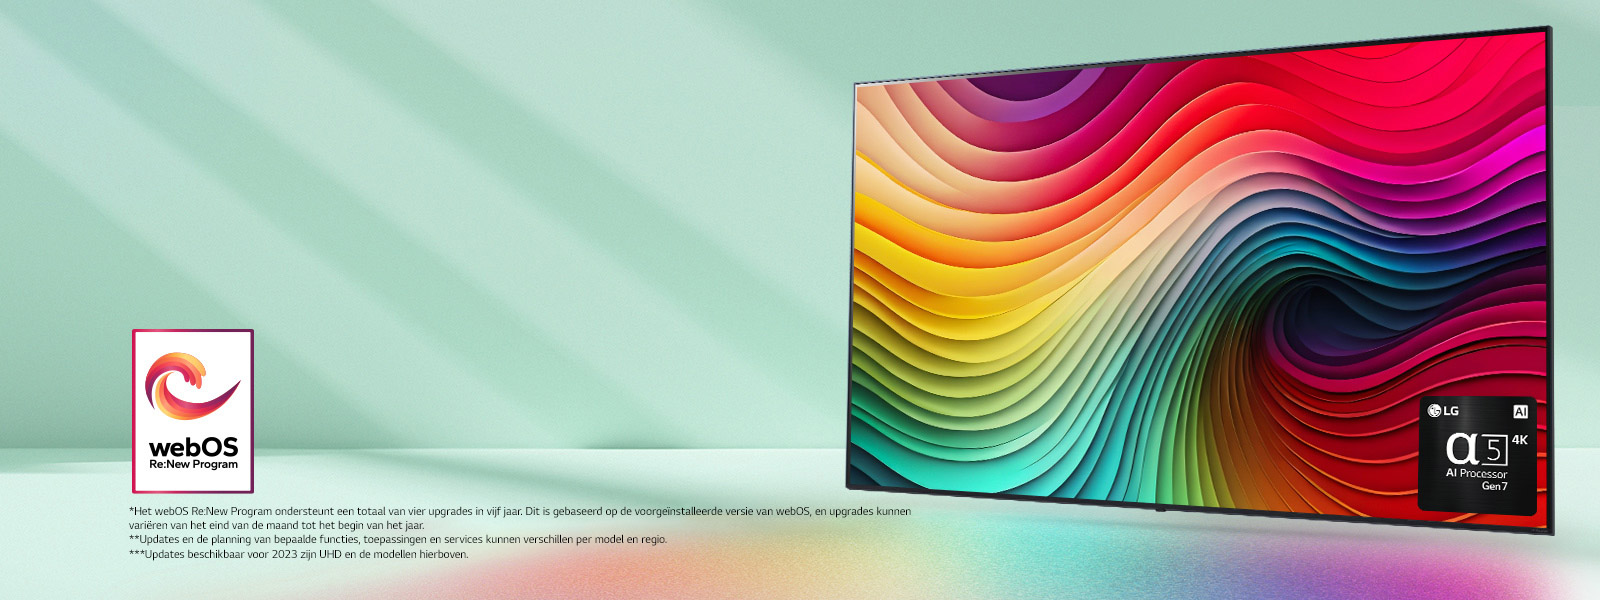 Een LG NanoCell TV tegen een muntgroene achtergrond met een kunstwerk met kleurrijke draaikolken op het scherm en een afbeelding van alpha 5 AI Processor Gen 7 in de hoek rechts onderin. Licht wordt uitgestraald, wat kleurrijke schaduwen eronder werpt. Het “webOS Re:New Program”-logo is te zien in de afbeelding. Een disclaimer geeft aan: “Het webOS Re:New Program ondersteunt een totaal van vier upgrades in vijf jaar. Dit is gebaseerd op de voorgeïnstalleerde versie van webOS, en upgrades kunnen variëren van het eind van de maand tot het begin van het jaar.” “Updates en de planning van bepaalde functies, toepassingen en services kunnen verschillen per model en regio.”  “Updates beschikbaar voor 2023 zijn UHD en de modellen hierboven.”